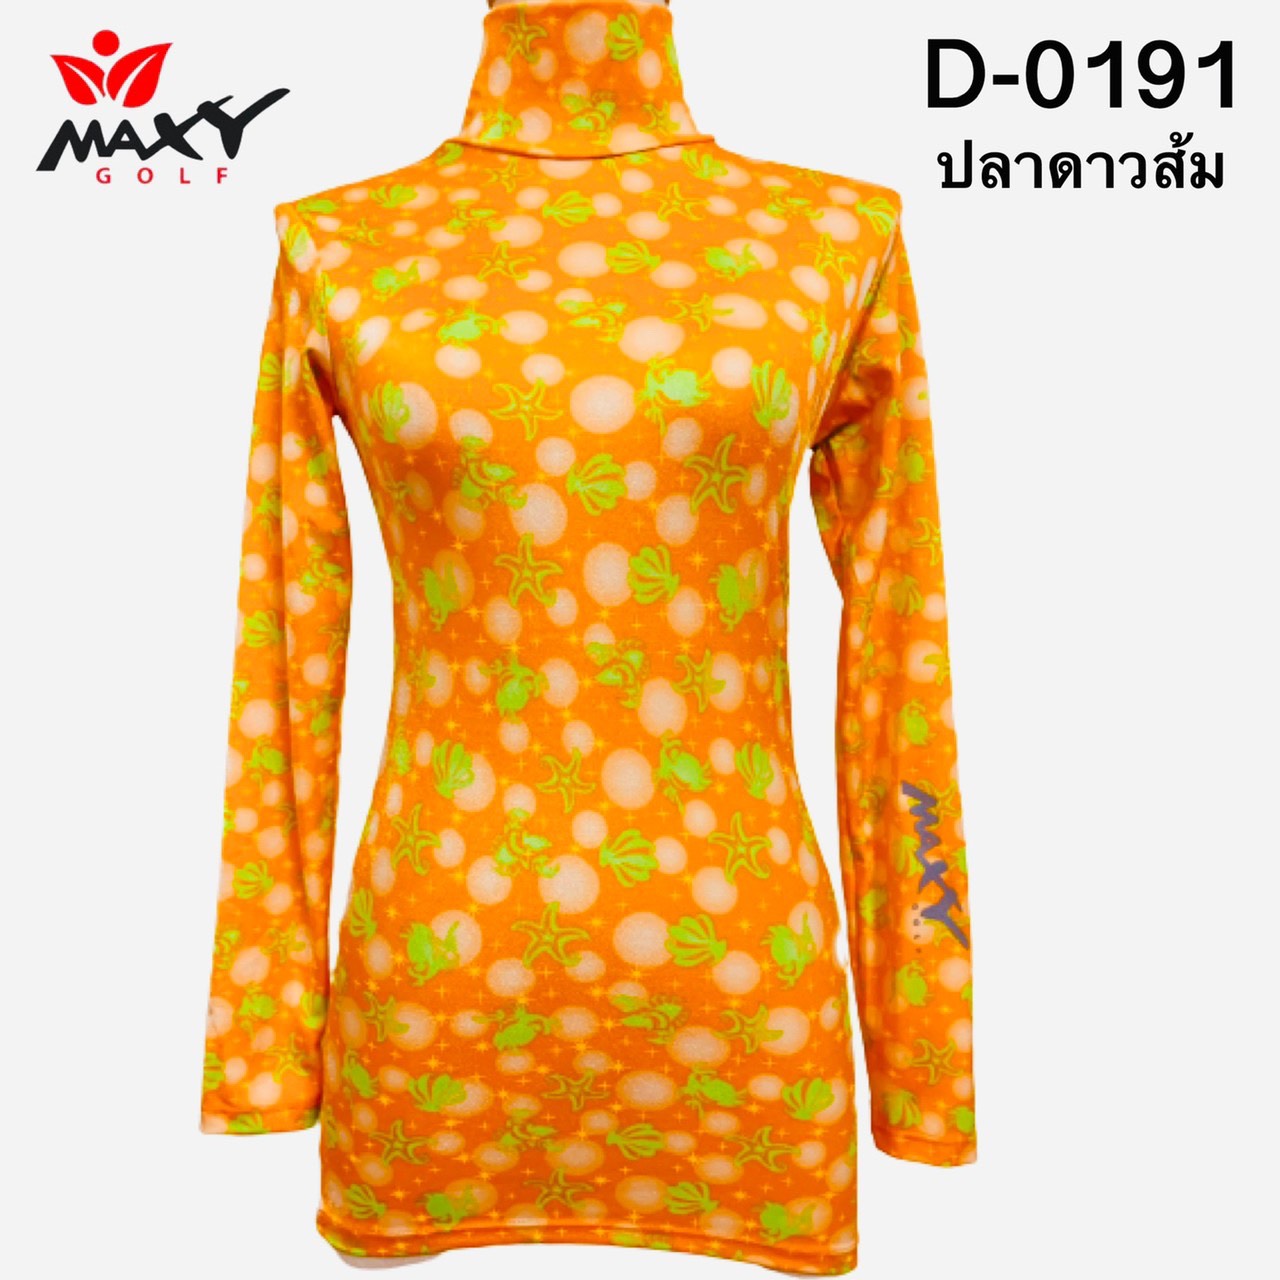 เสื้อบอดี้ฟิตกันแดด(คอเต่า) สำหรับผู้หญิง ยี่ห้อ MAXY GOLF (รหัส D-0191 ลายปลาดาวส้ม)